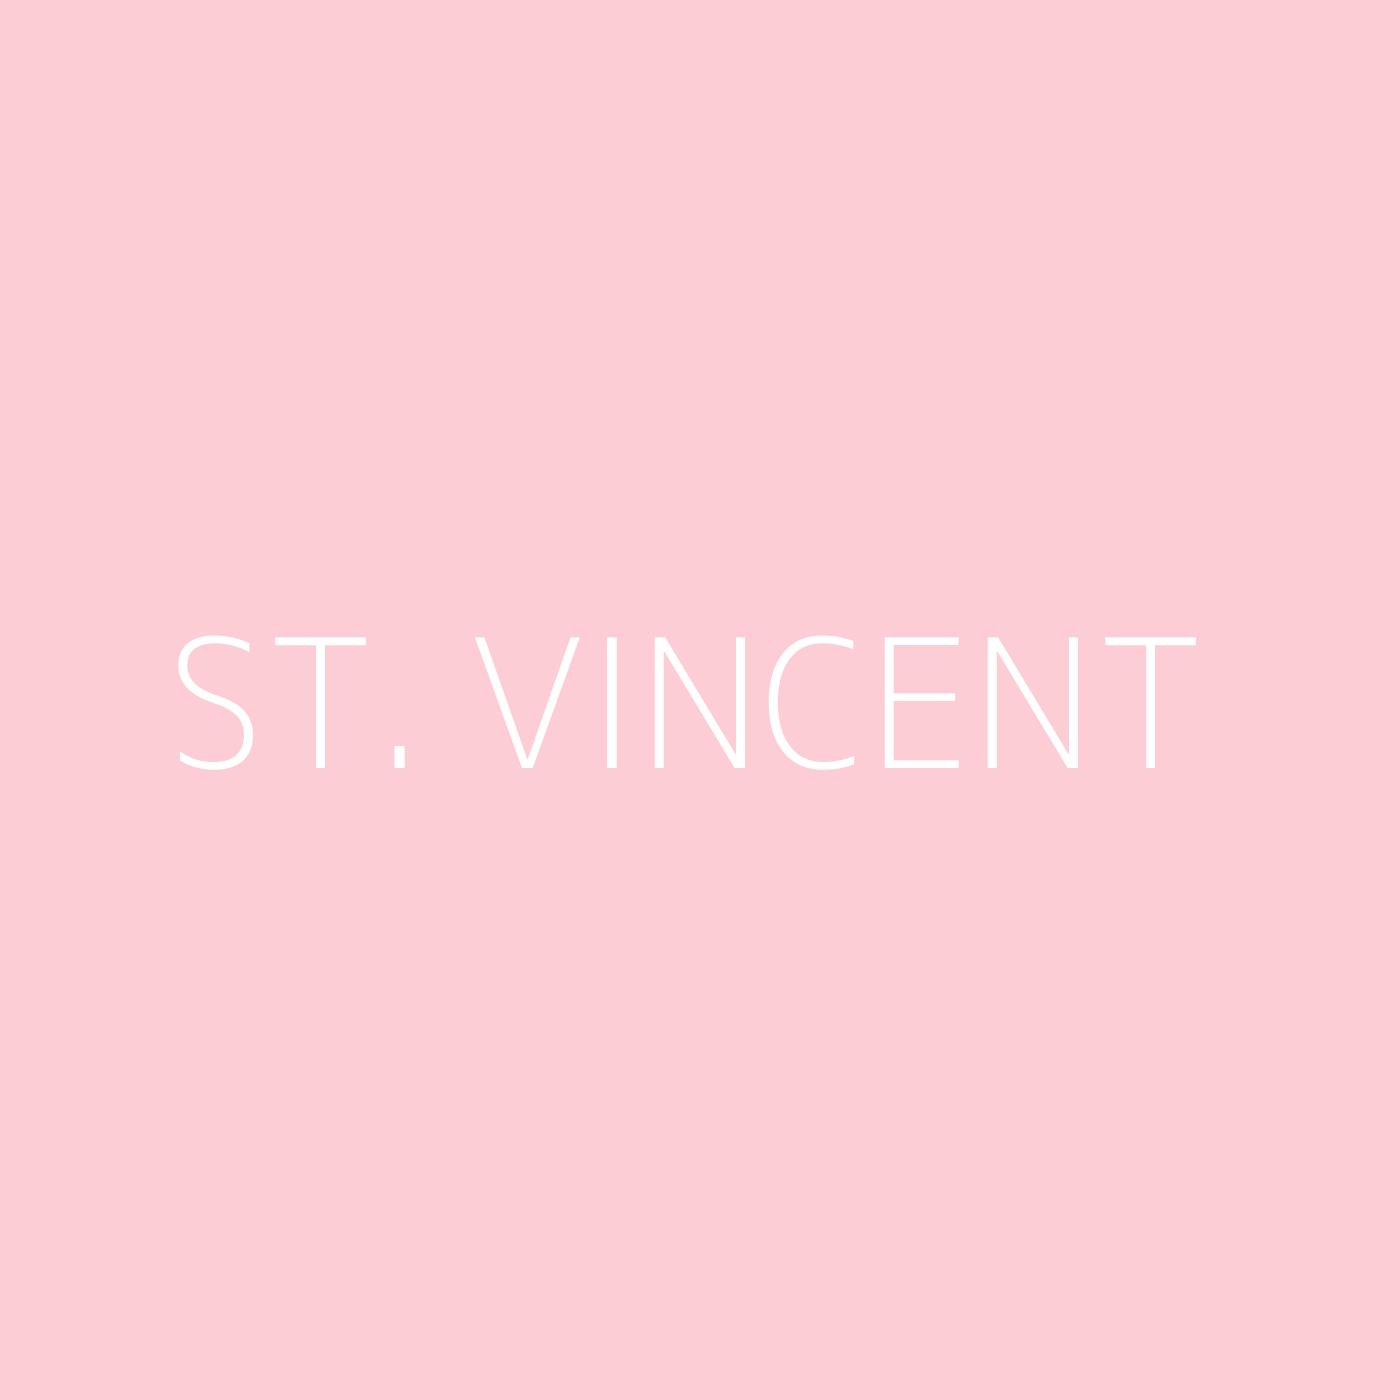 St. Vincent Playlist Artwork